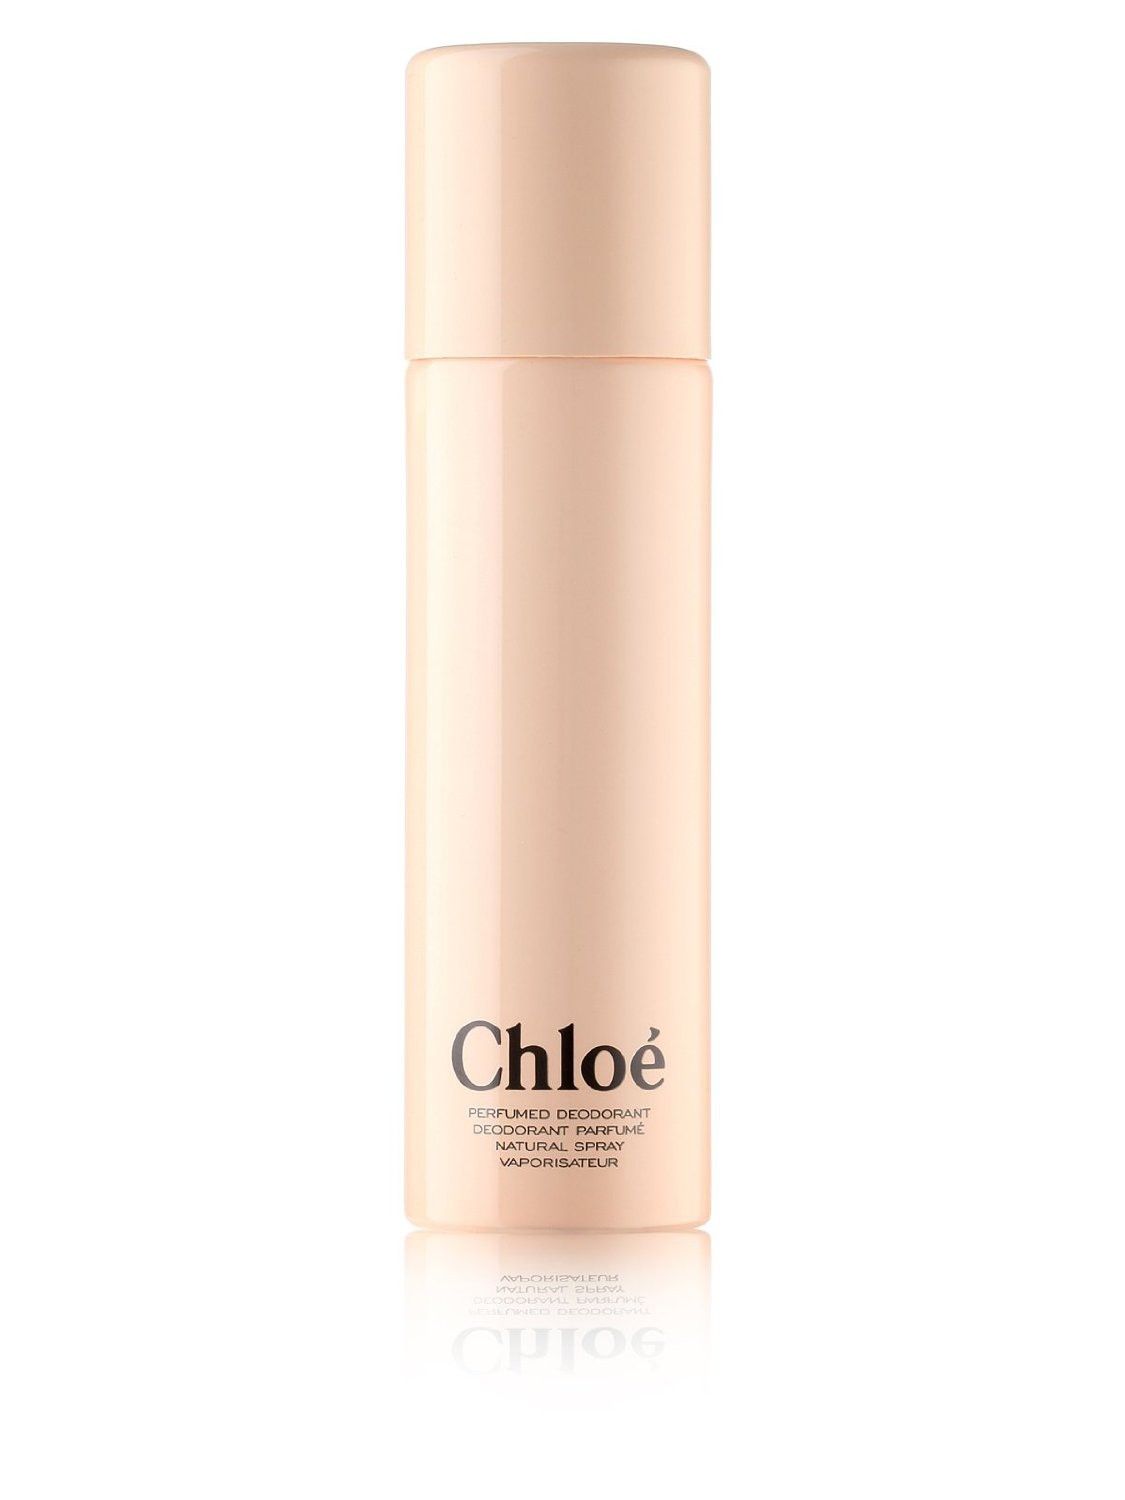 Chloe Signature perfumed deodorant 100ml.